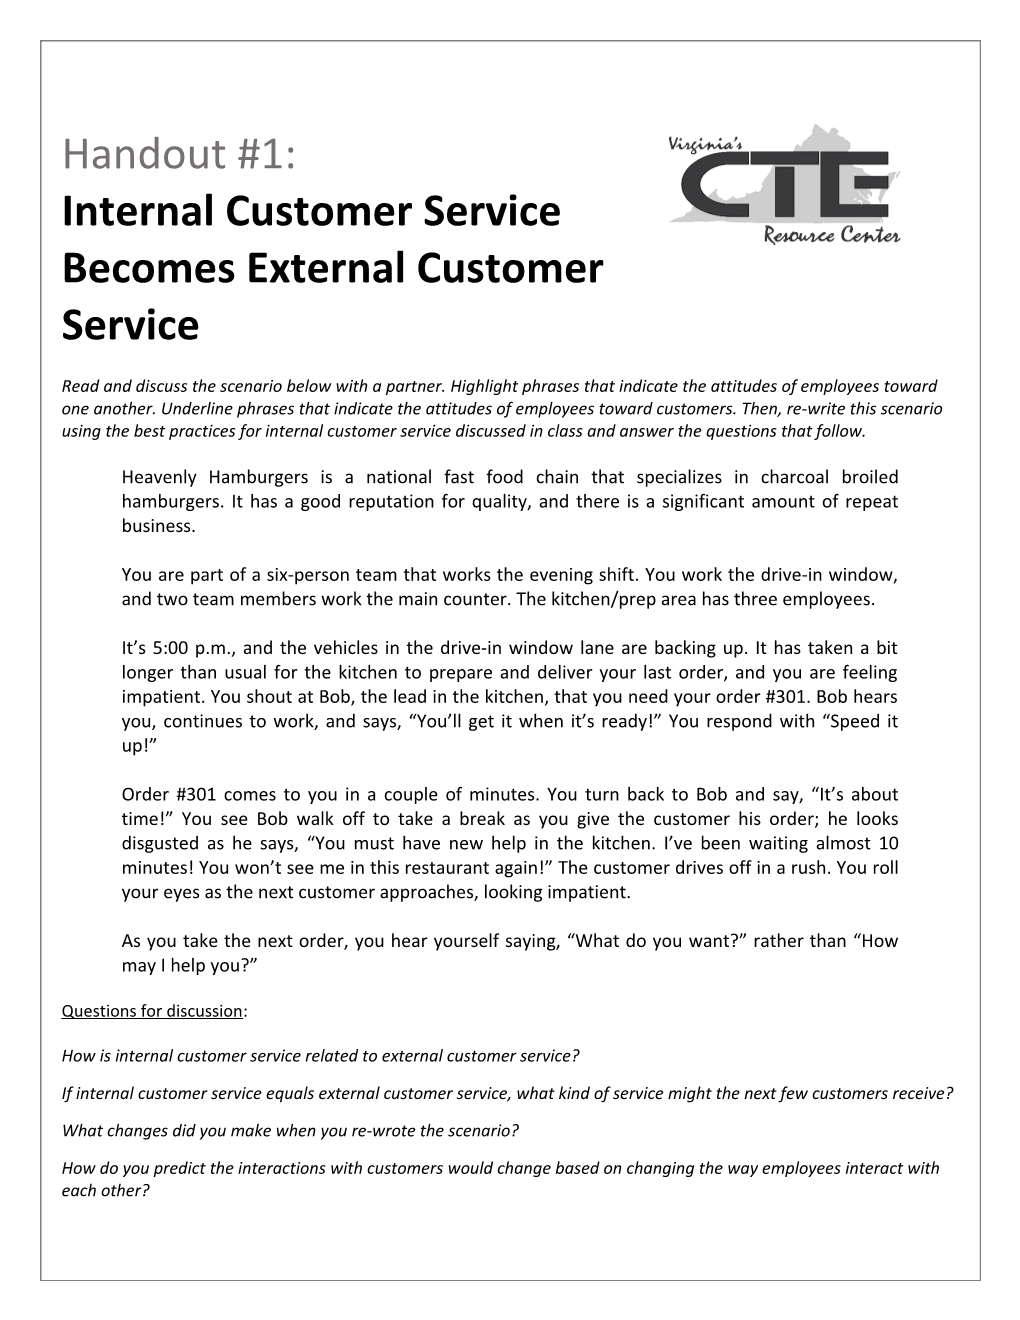 Internal Customer Service Becomes External Customer Service